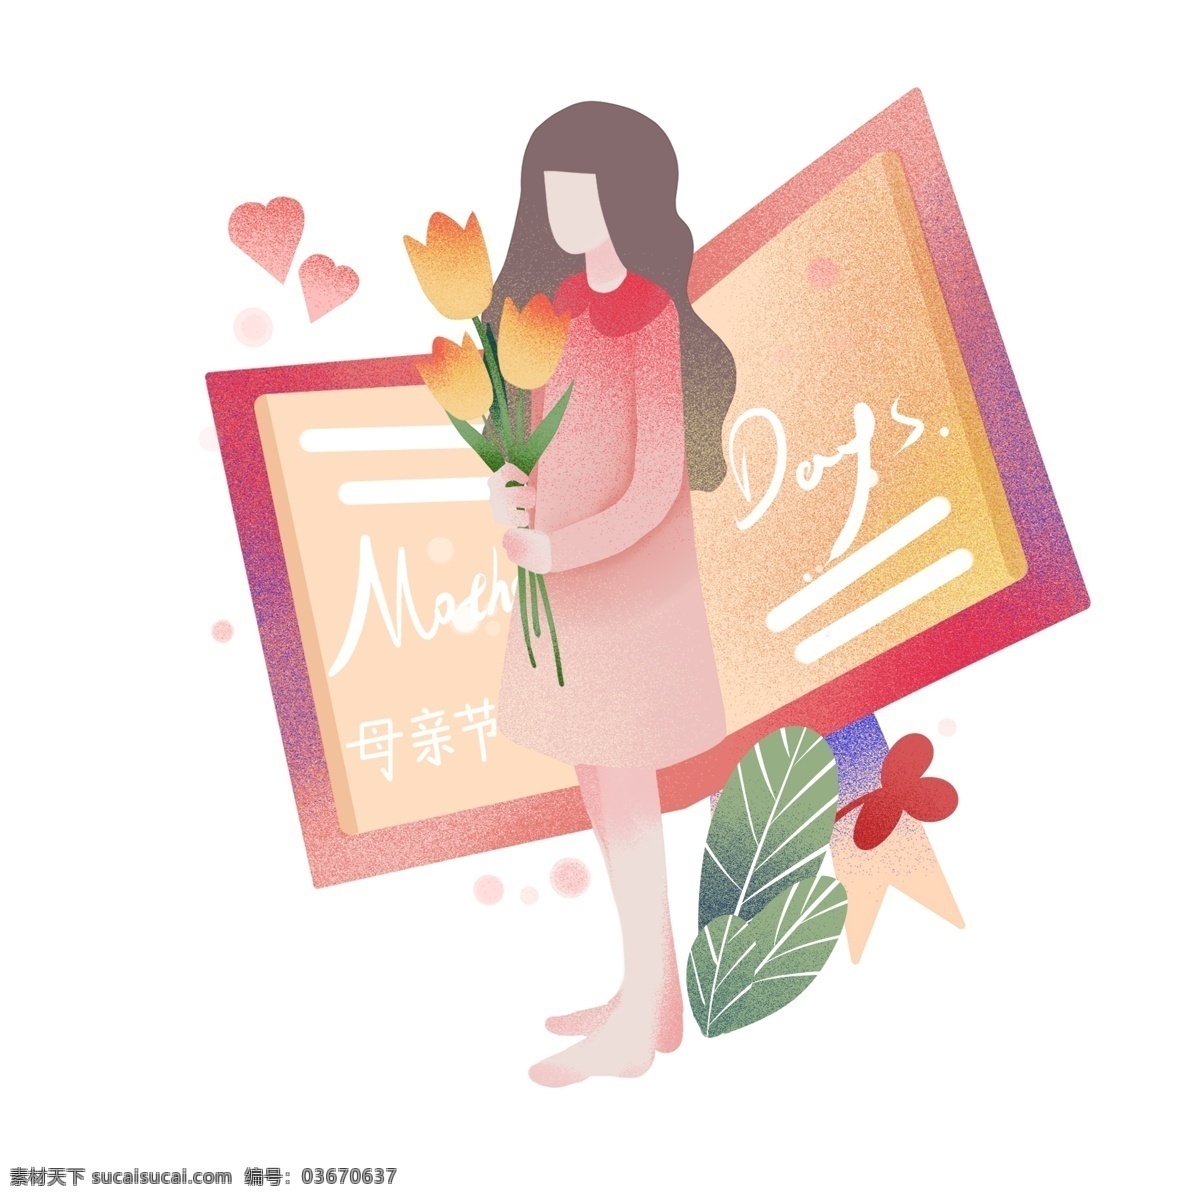 母亲节 快乐 送花 女孩 感恩 插画 祝福贺卡 金香玉花朵 植物装饰 卡通女孩